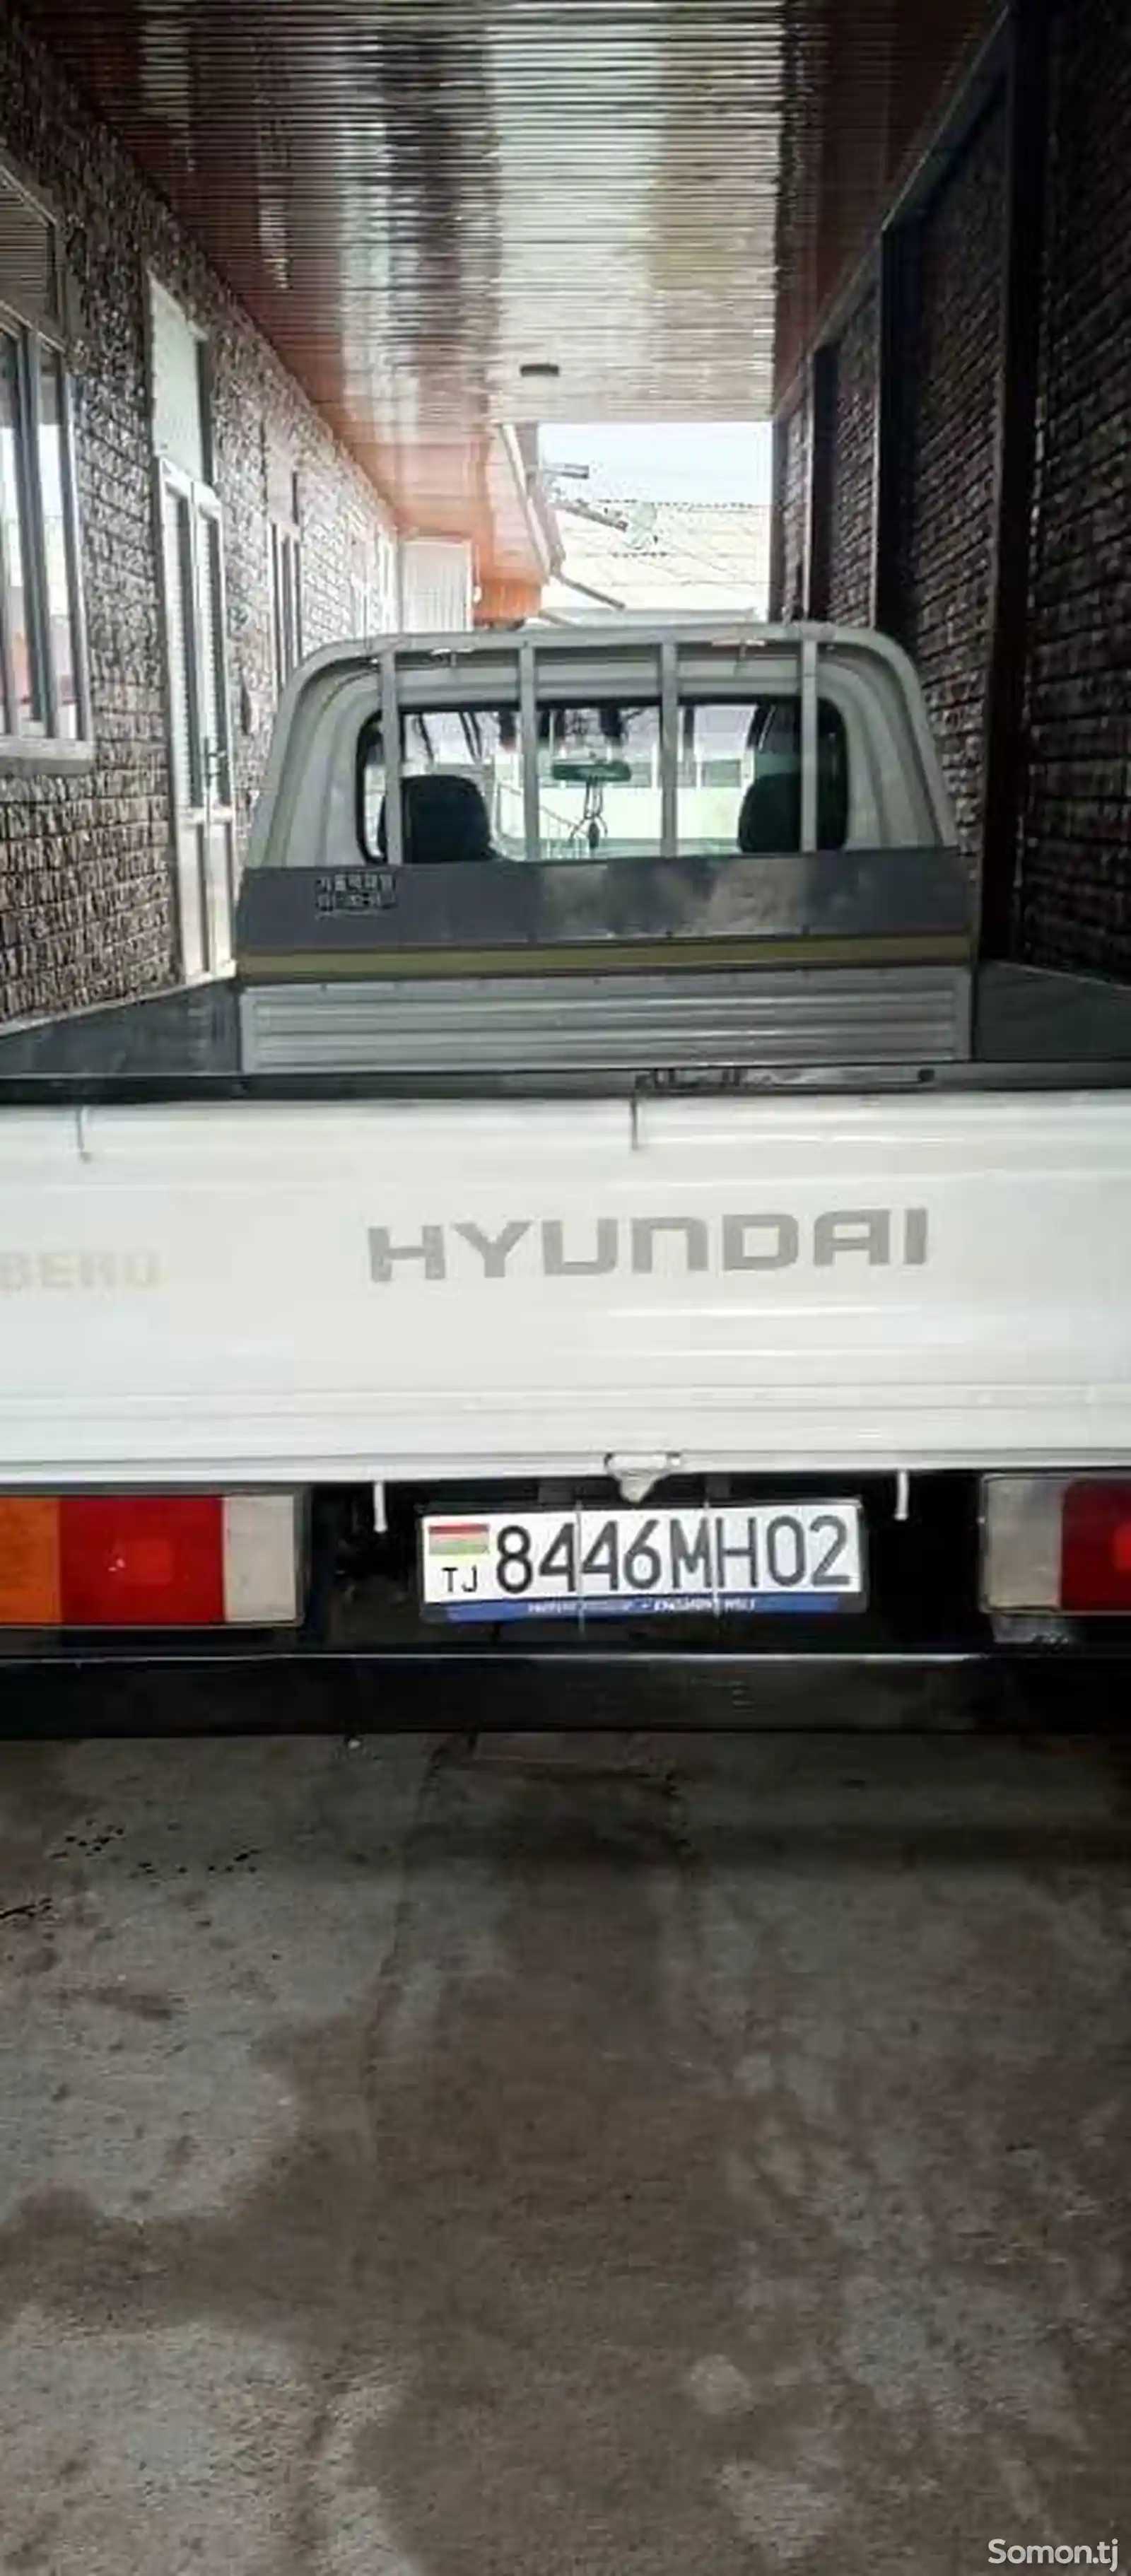 Бортовой автомобиль Hyndai libero, 2002-2